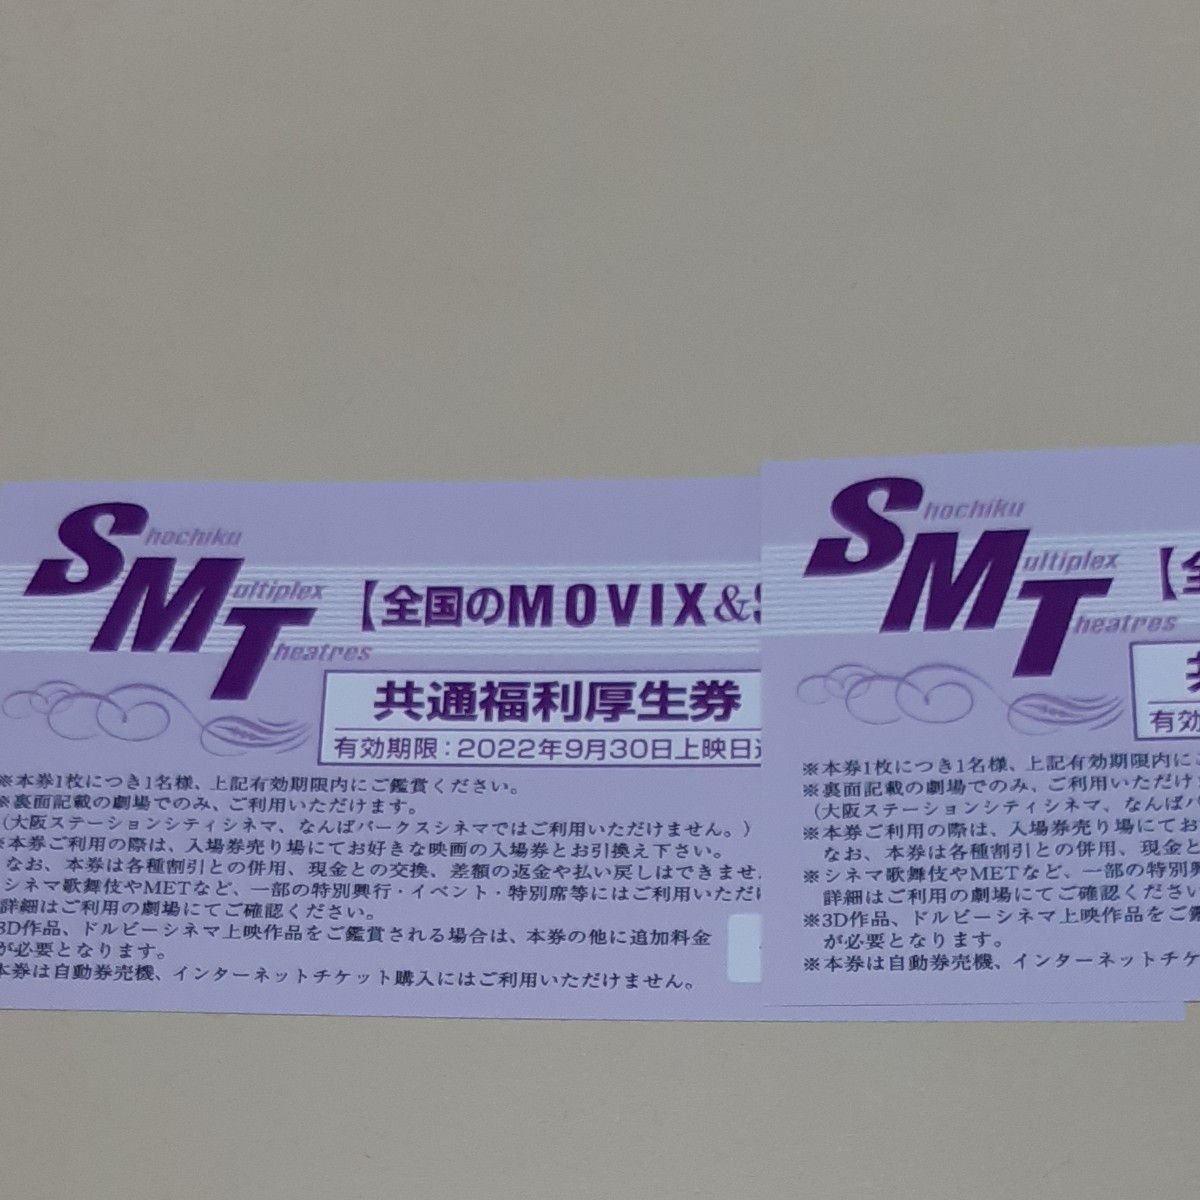 全国のMOVIX &SMT直営映画館 共通福利厚生券2枚セット - その他